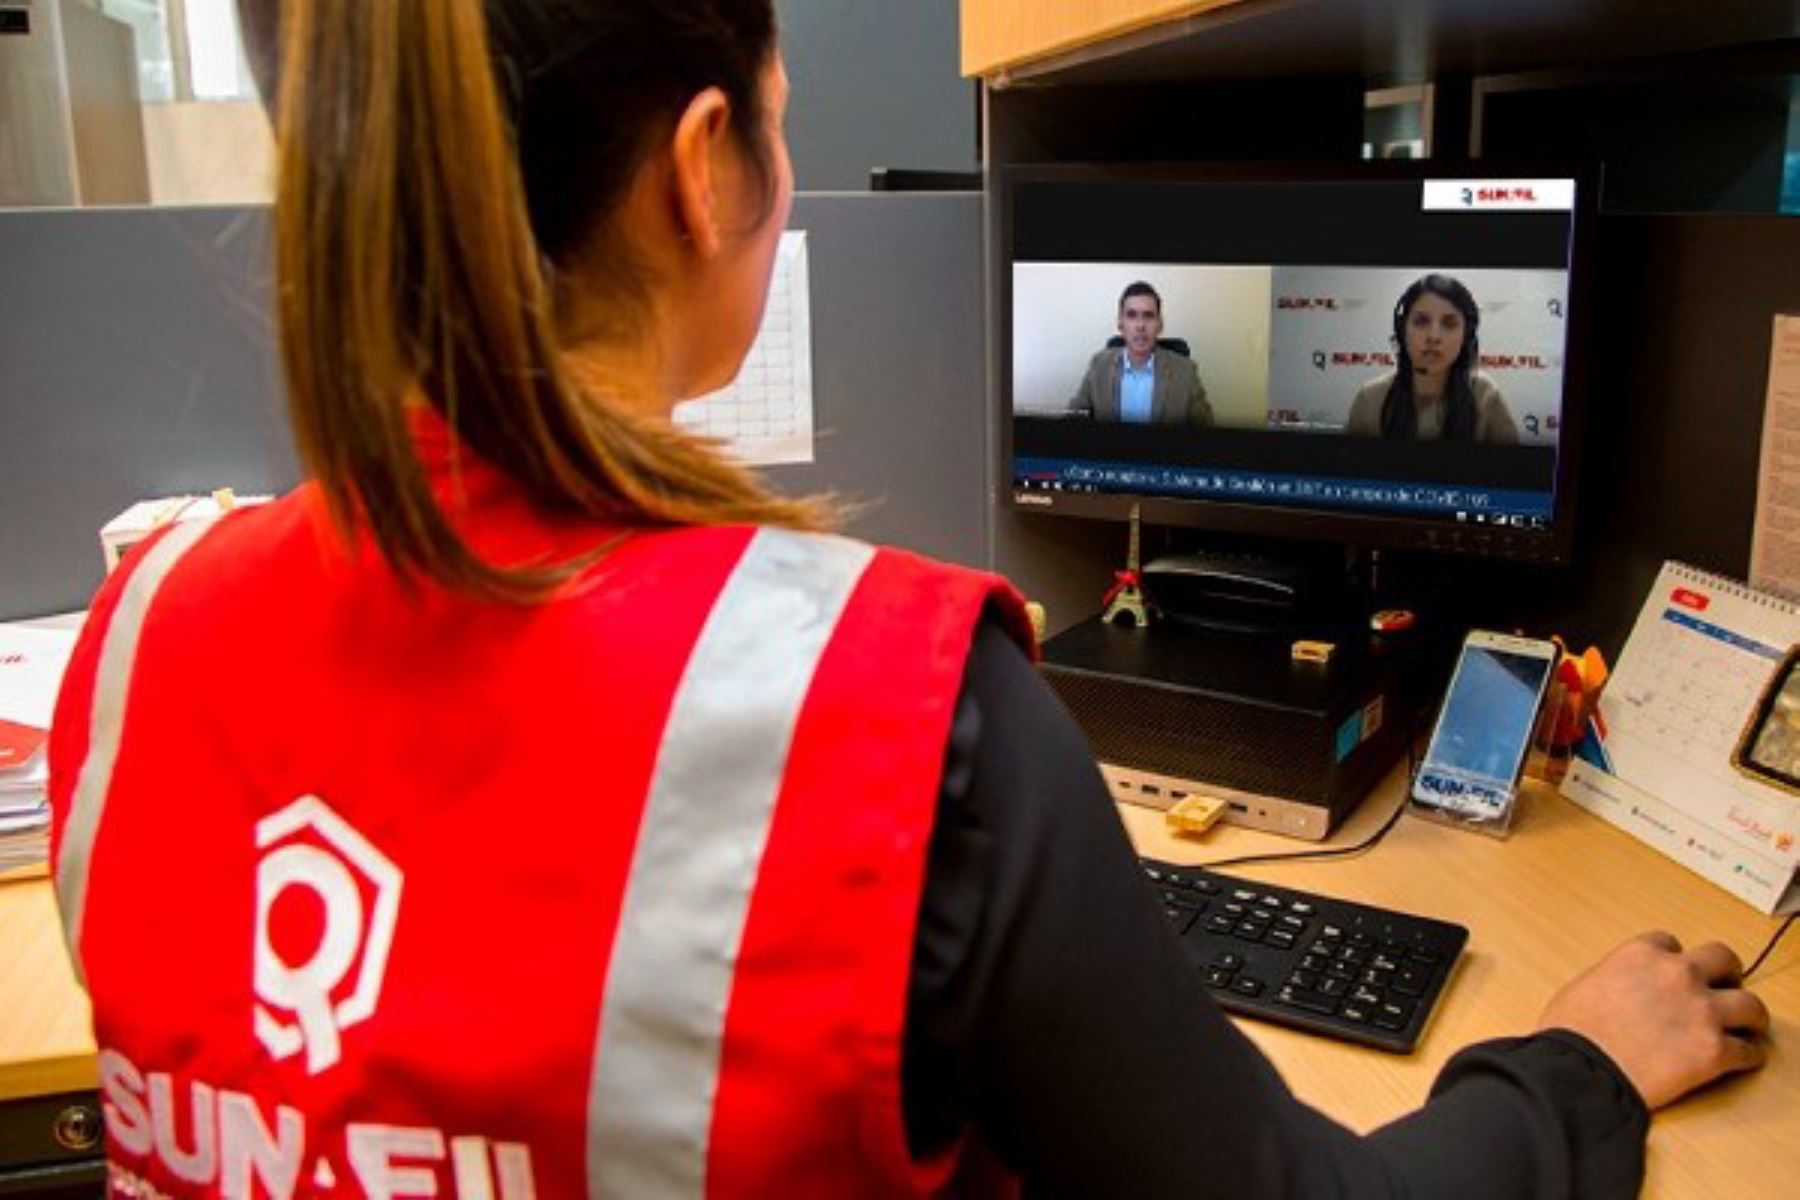 Sunafil realiza capacitaciones virtuales para empleadores y trabajadores.